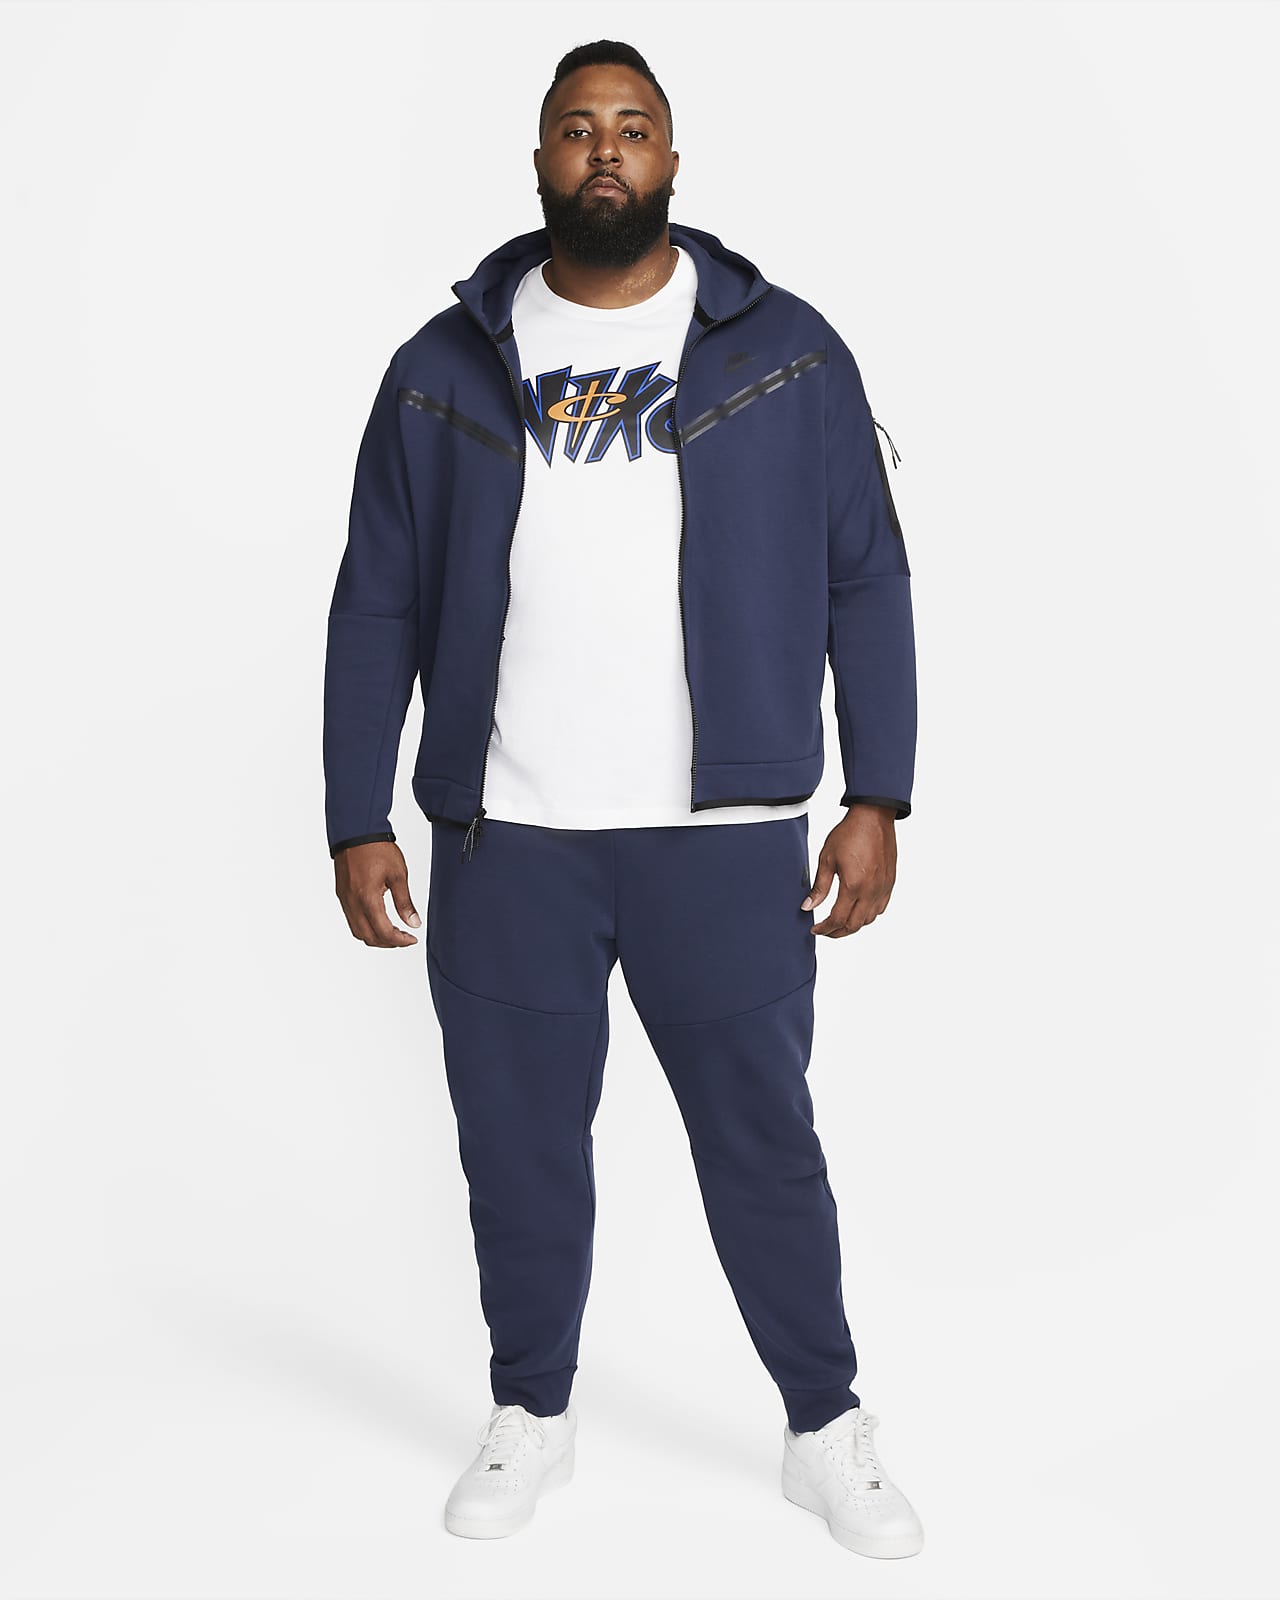 Nike Sportswear Tech Fleece Full-Zip Hoodie Rattan Black Zipper Hooded Men  Size